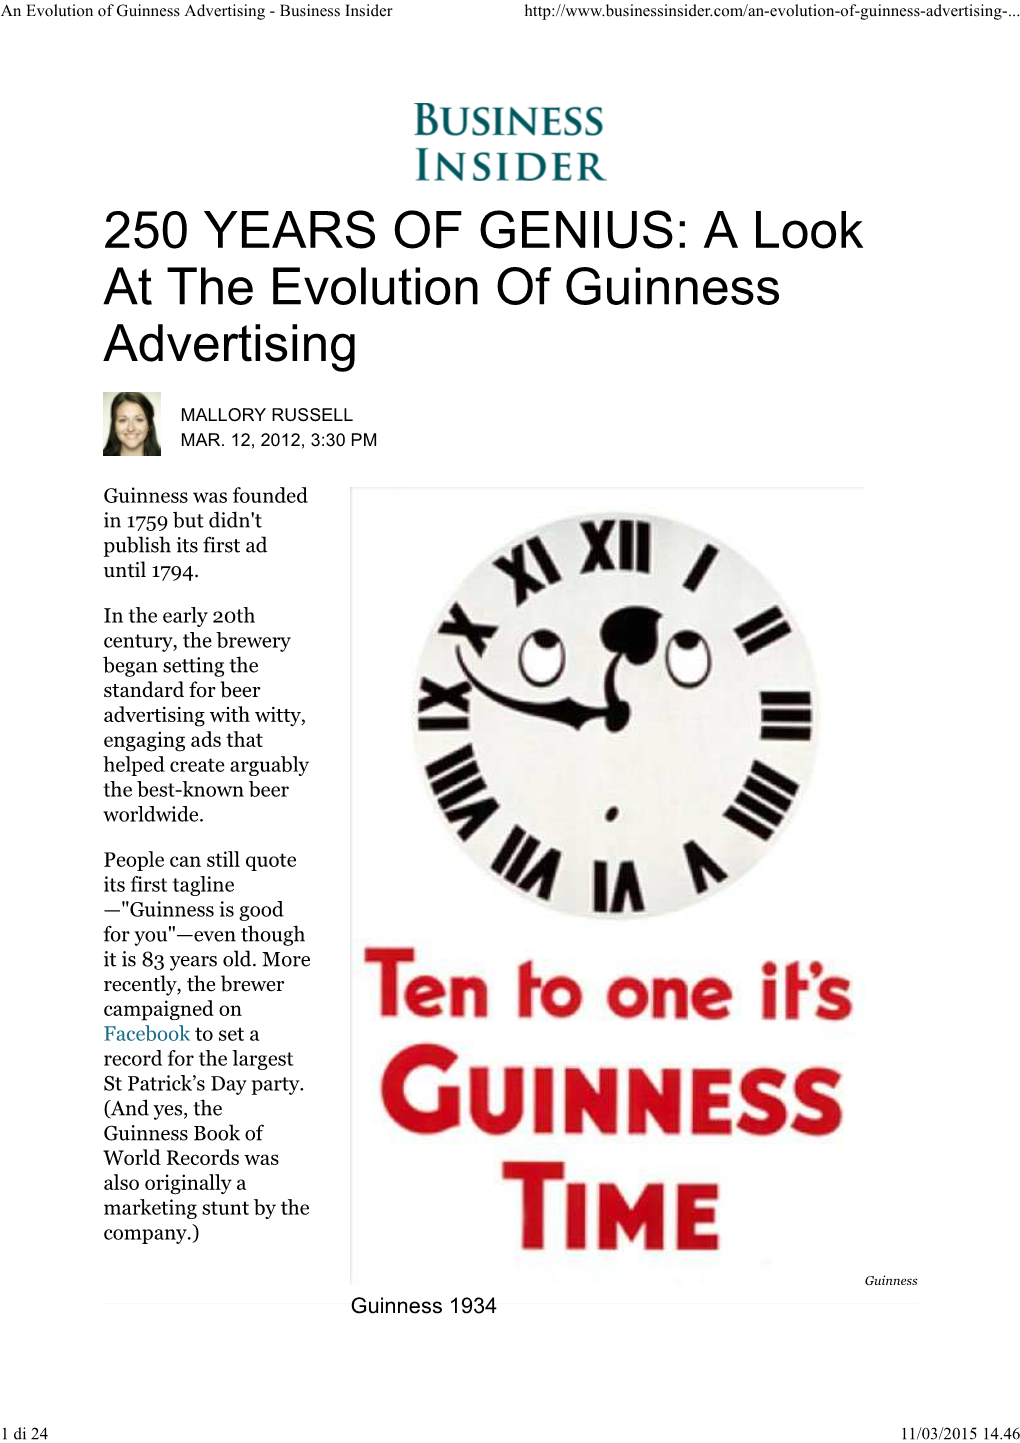 An Evolution of Guinness Advertising - Business Insider